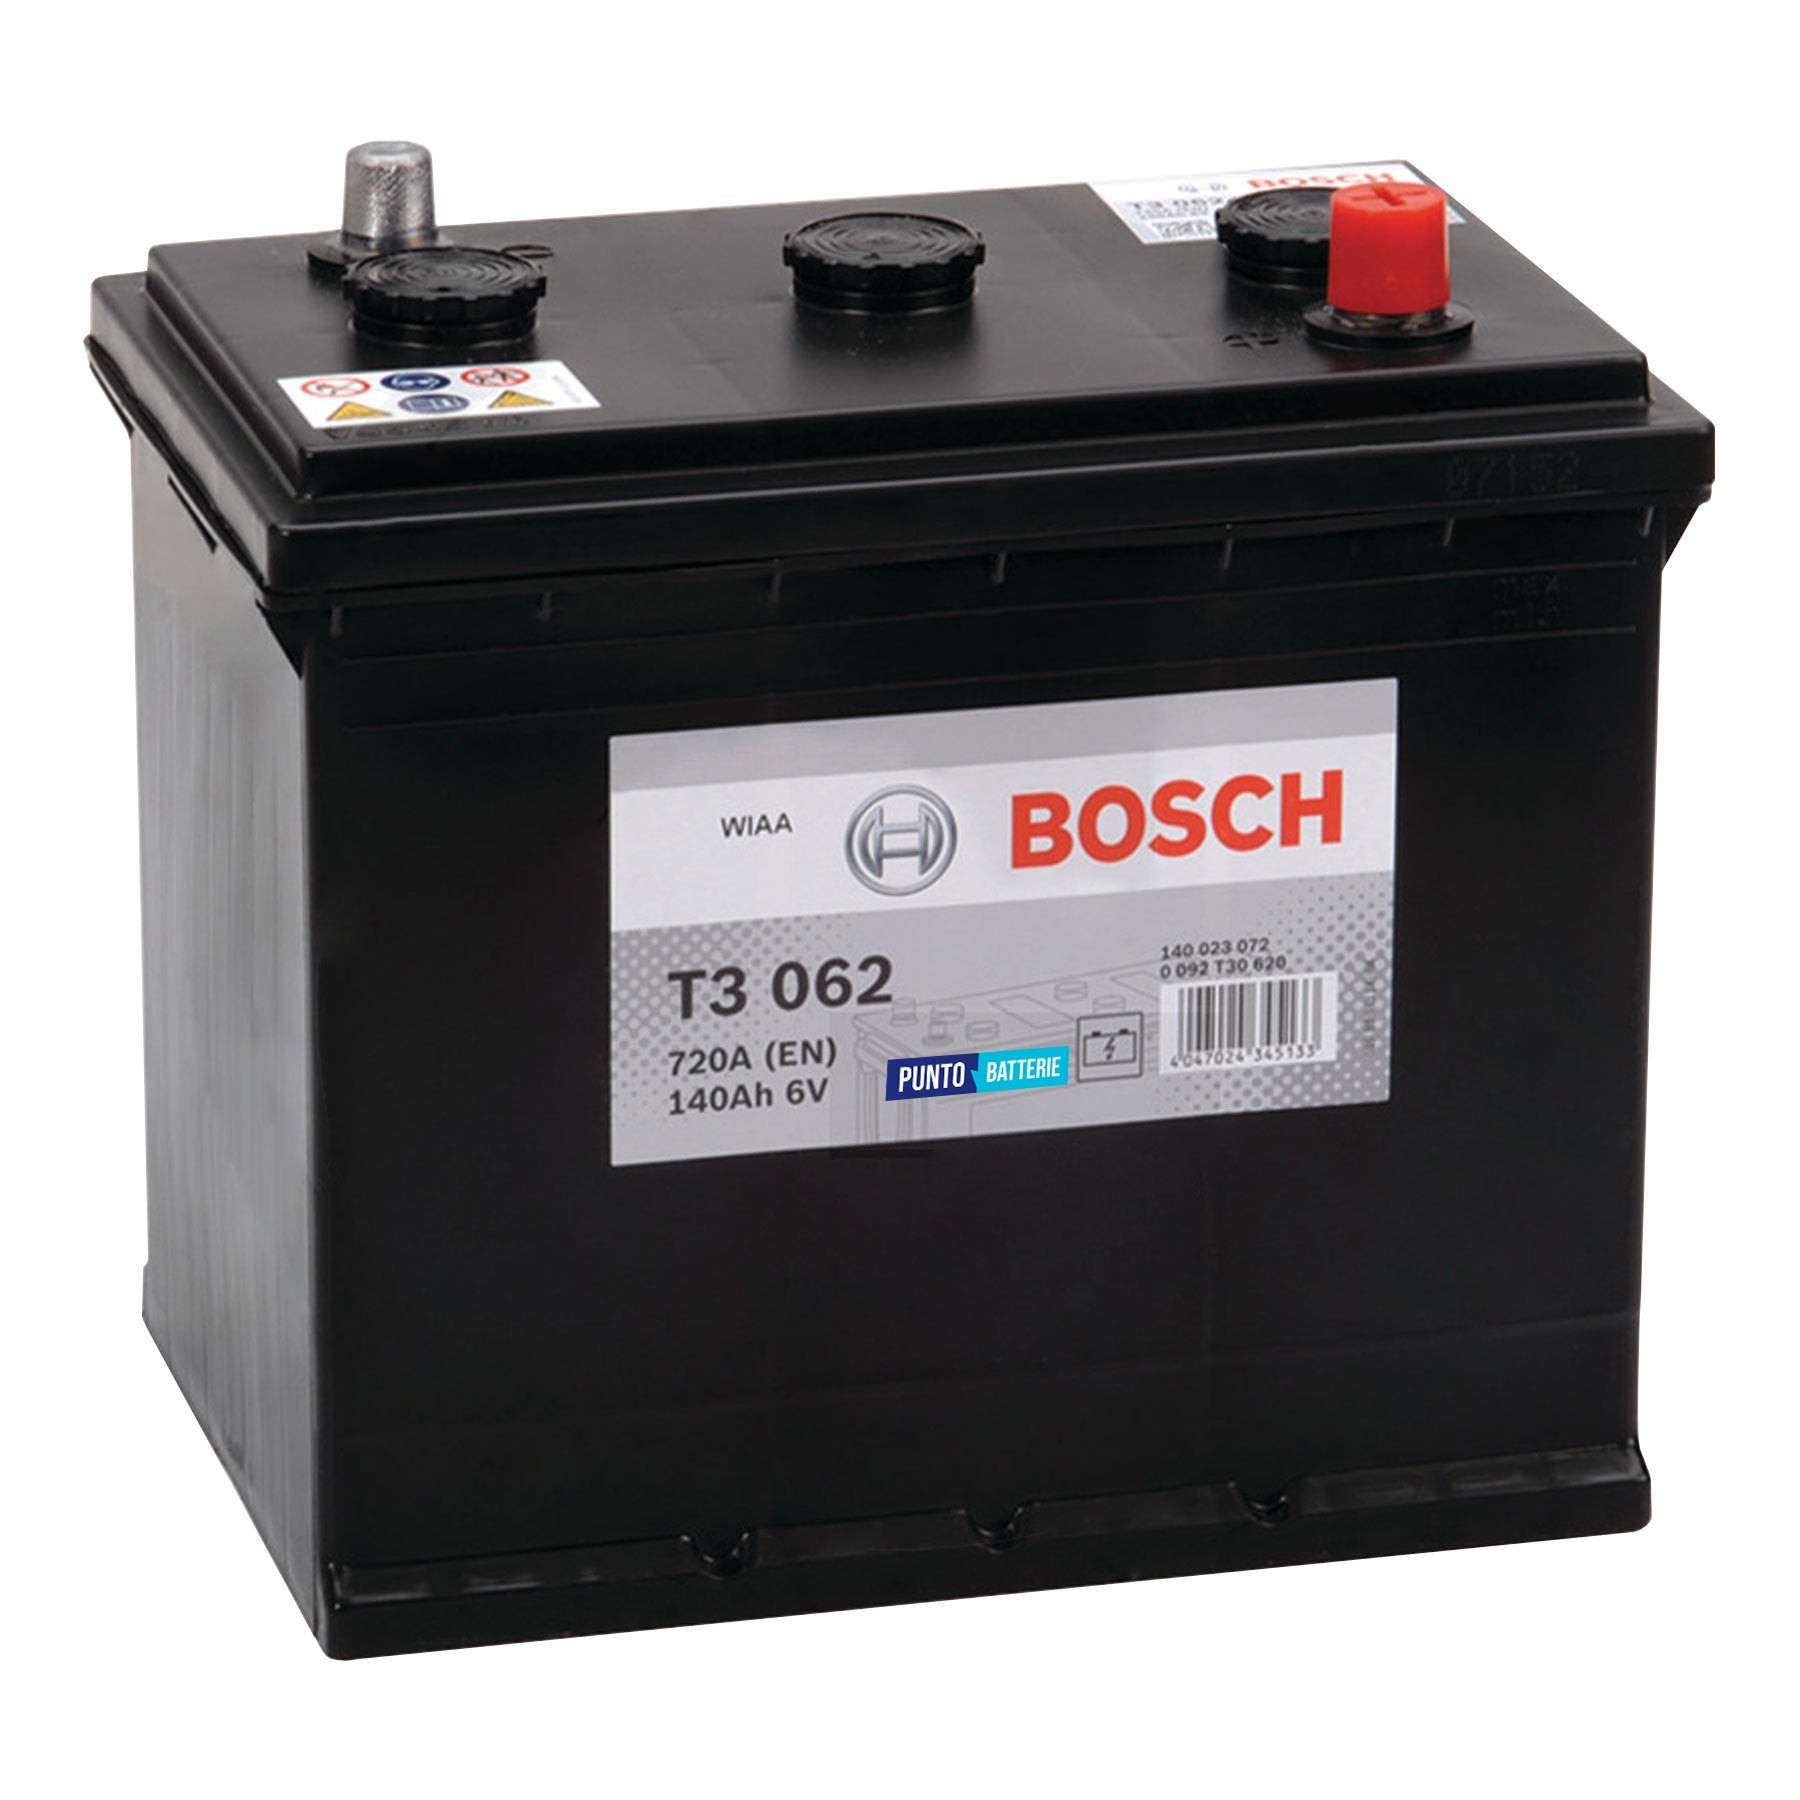 Batteria originale Bosch T3 T3062, dimensioni 260 x 175 x 236, polo positivo a destra, 6 volt, 140 amperora, 720 ampere. Batteria per camion e veicoli pesanti.